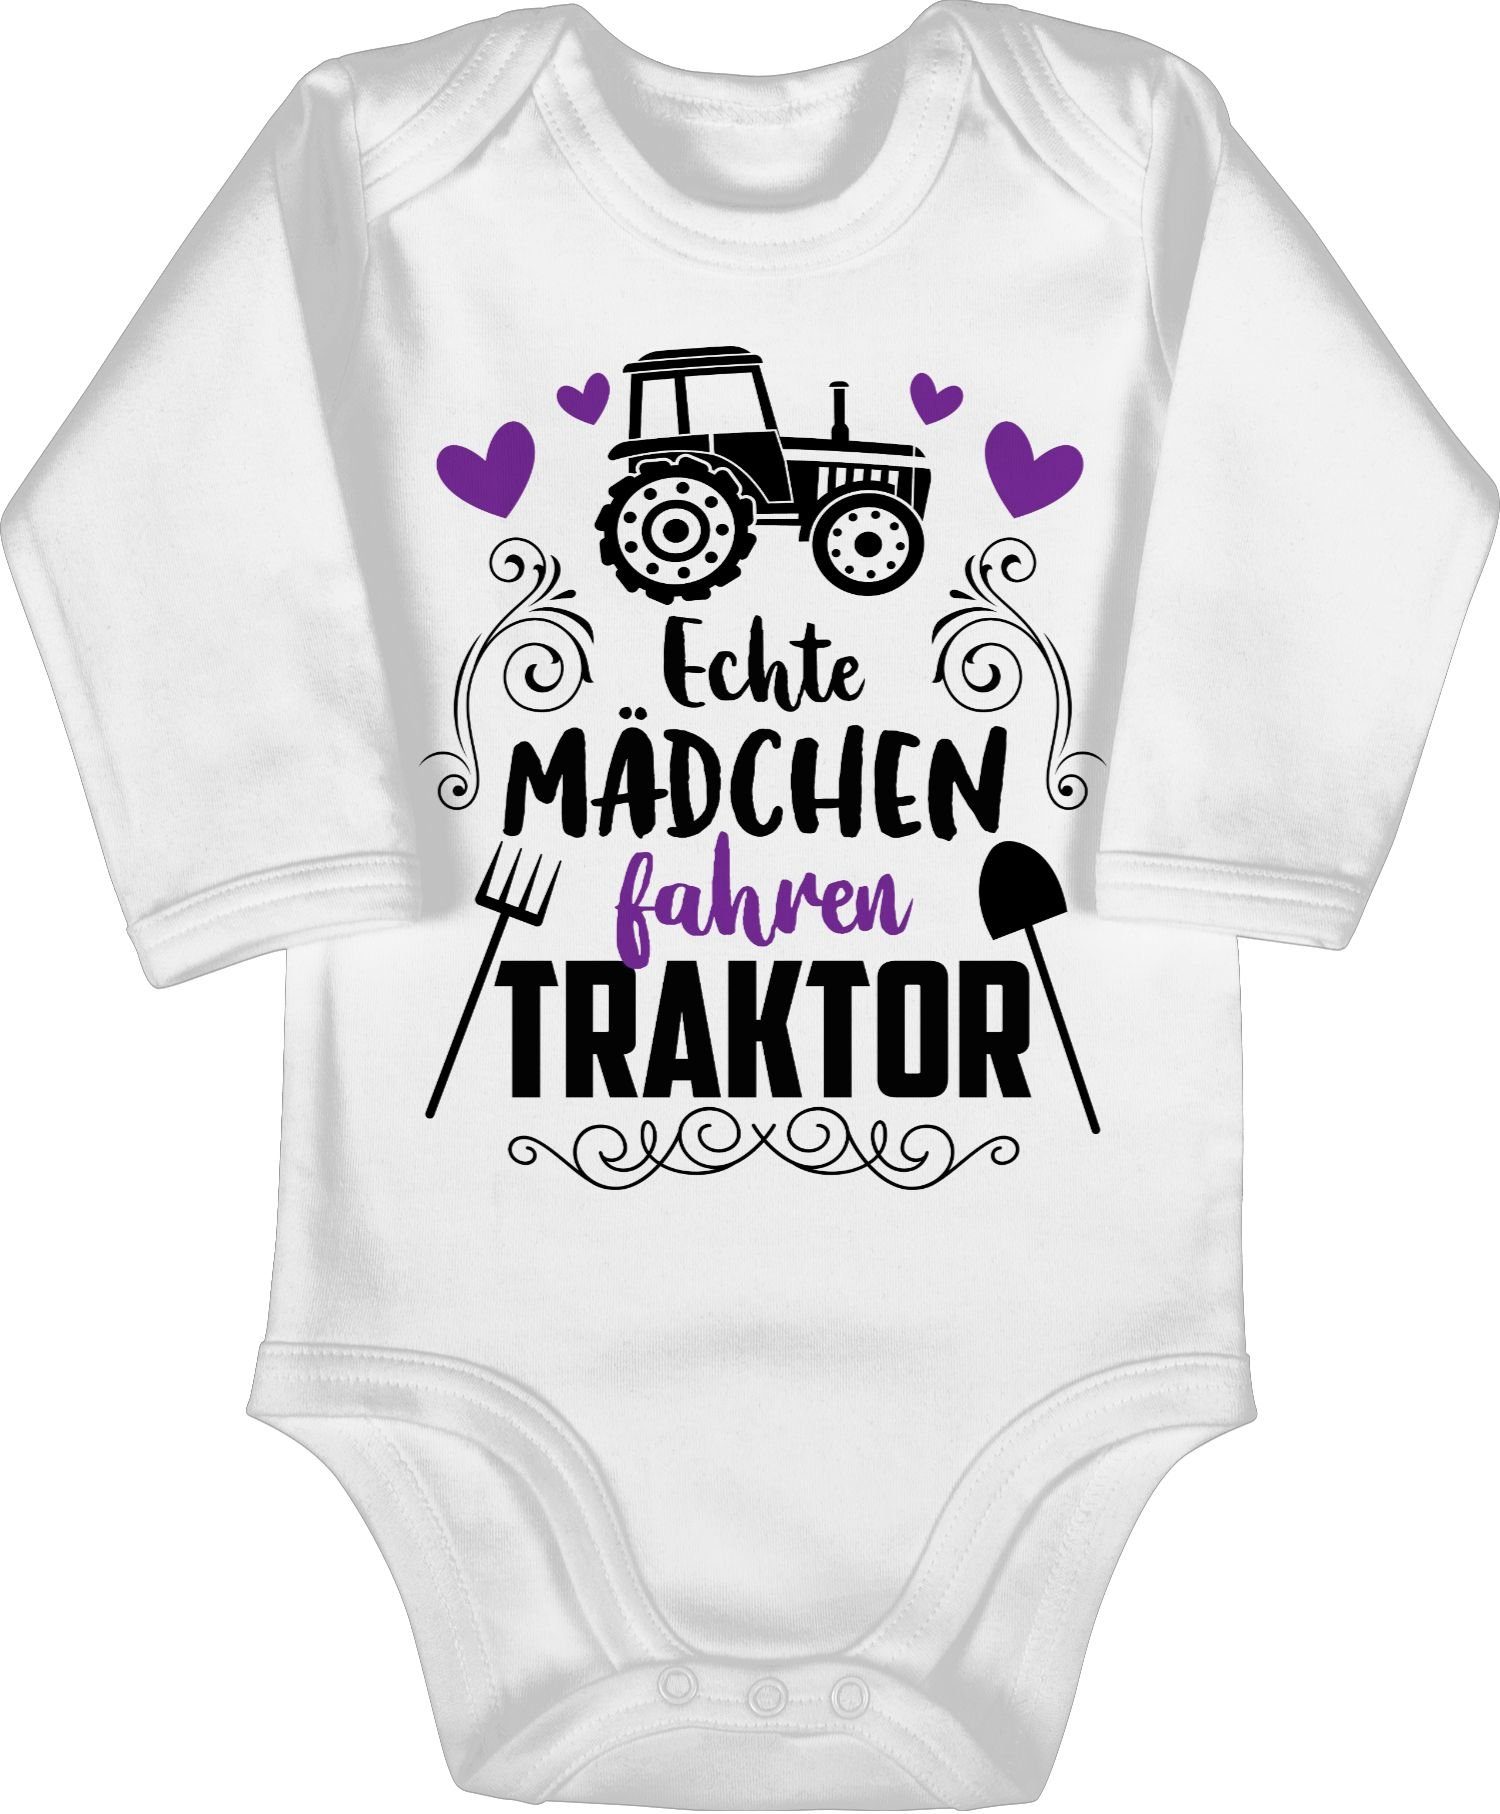 Bagger Traktor Mädchen schwarz Baby Echte Shirtbody - 1 fahren Weiß Shirtracer und Traktor Co.